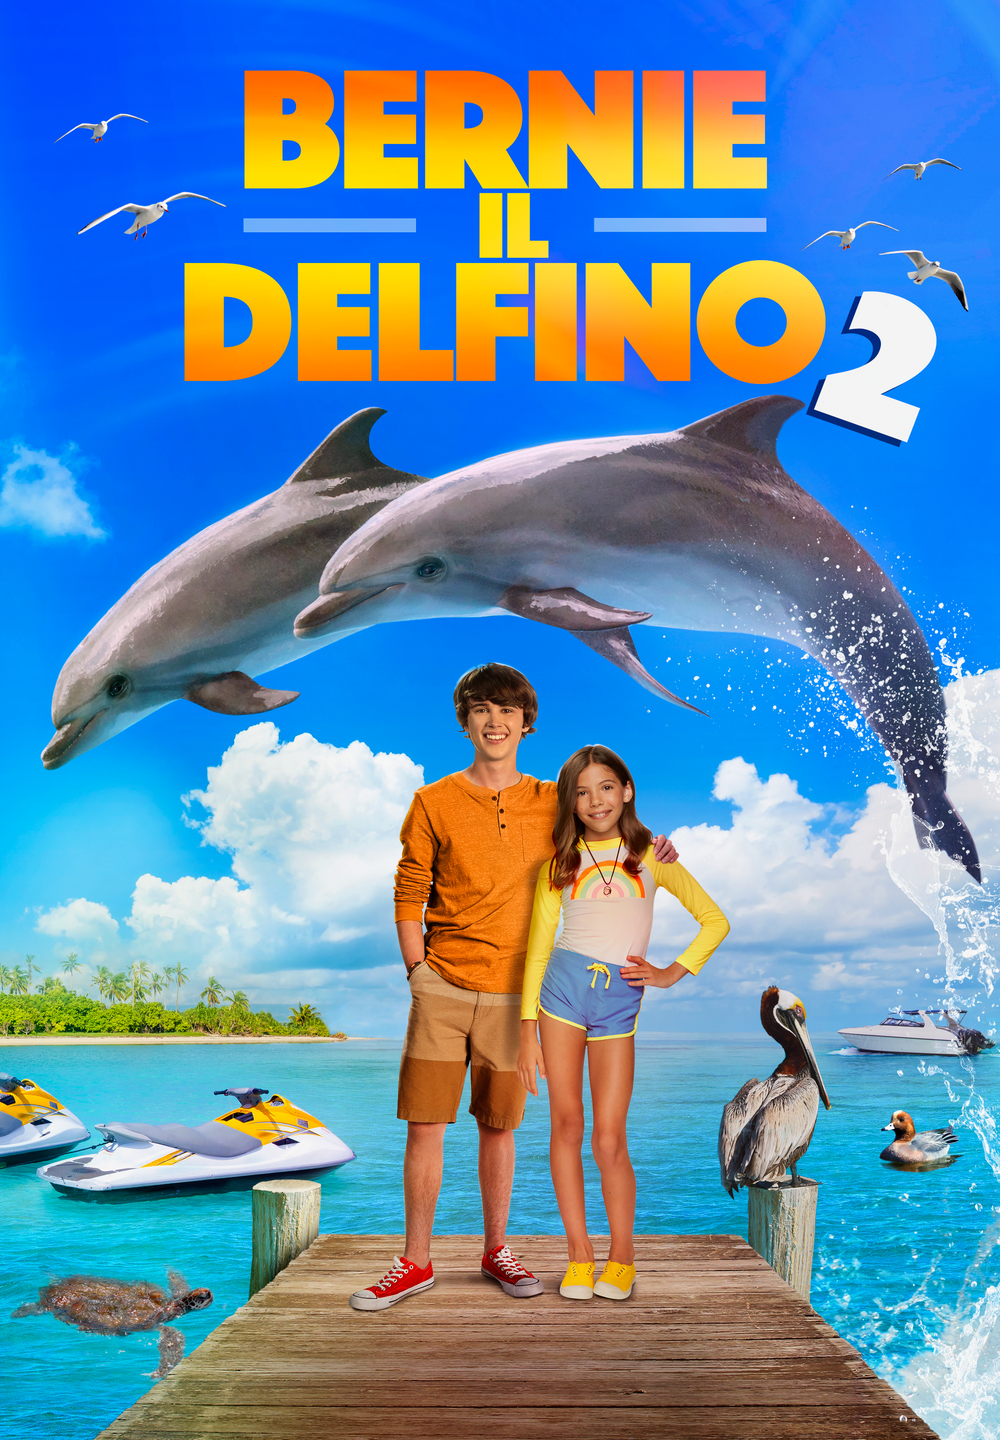 Bernie il delfino 2 [HD] (2019)